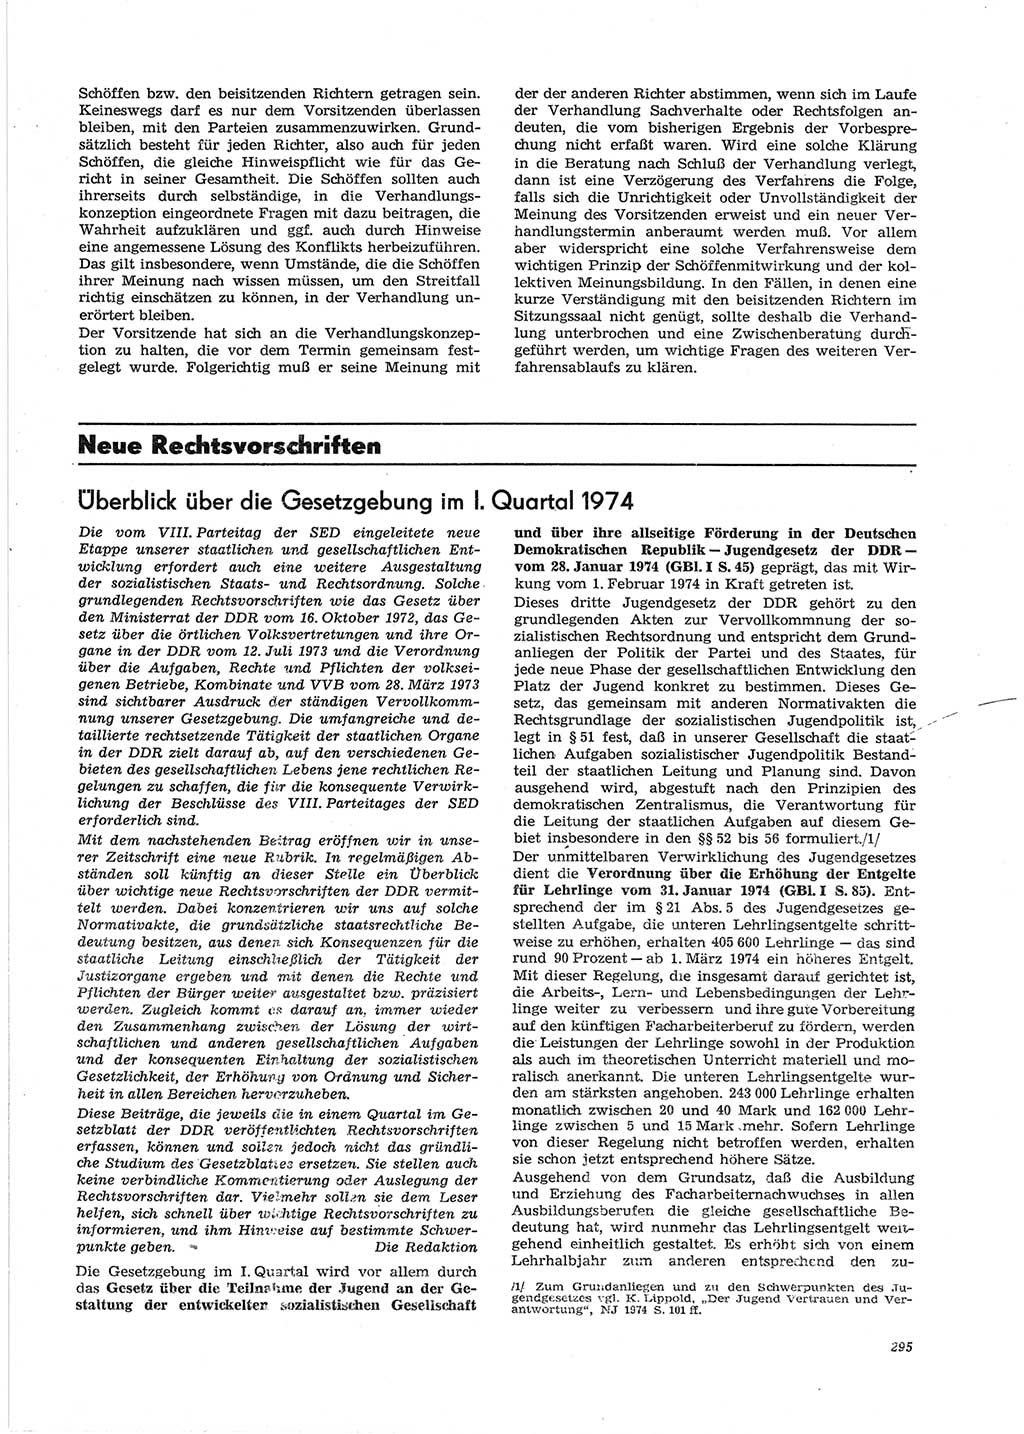 Neue Justiz (NJ), Zeitschrift für Recht und Rechtswissenschaft [Deutsche Demokratische Republik (DDR)], 28. Jahrgang 1974, Seite 295 (NJ DDR 1974, S. 295)